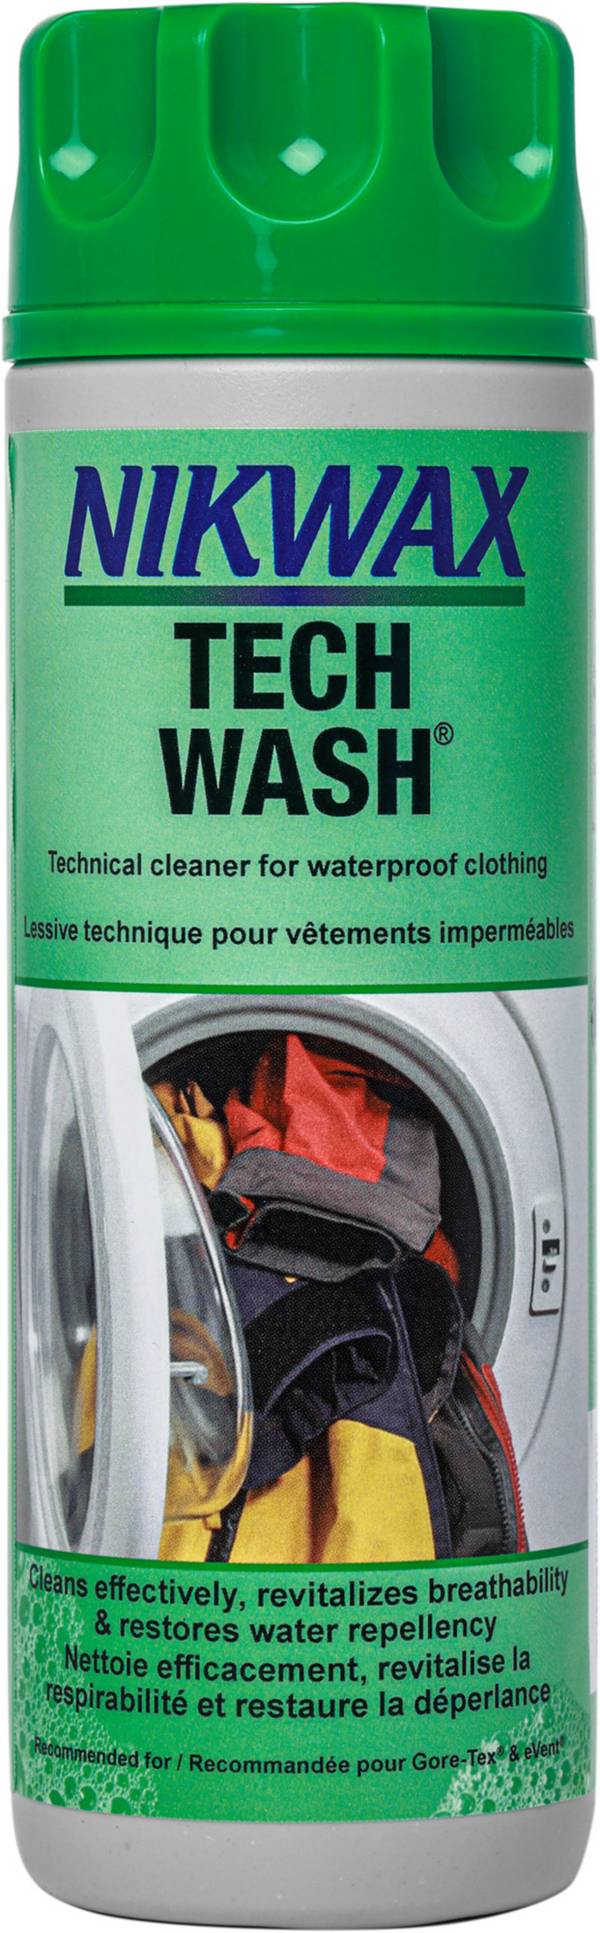 Nikwax Tech Wash Outdoor Clothing Wash